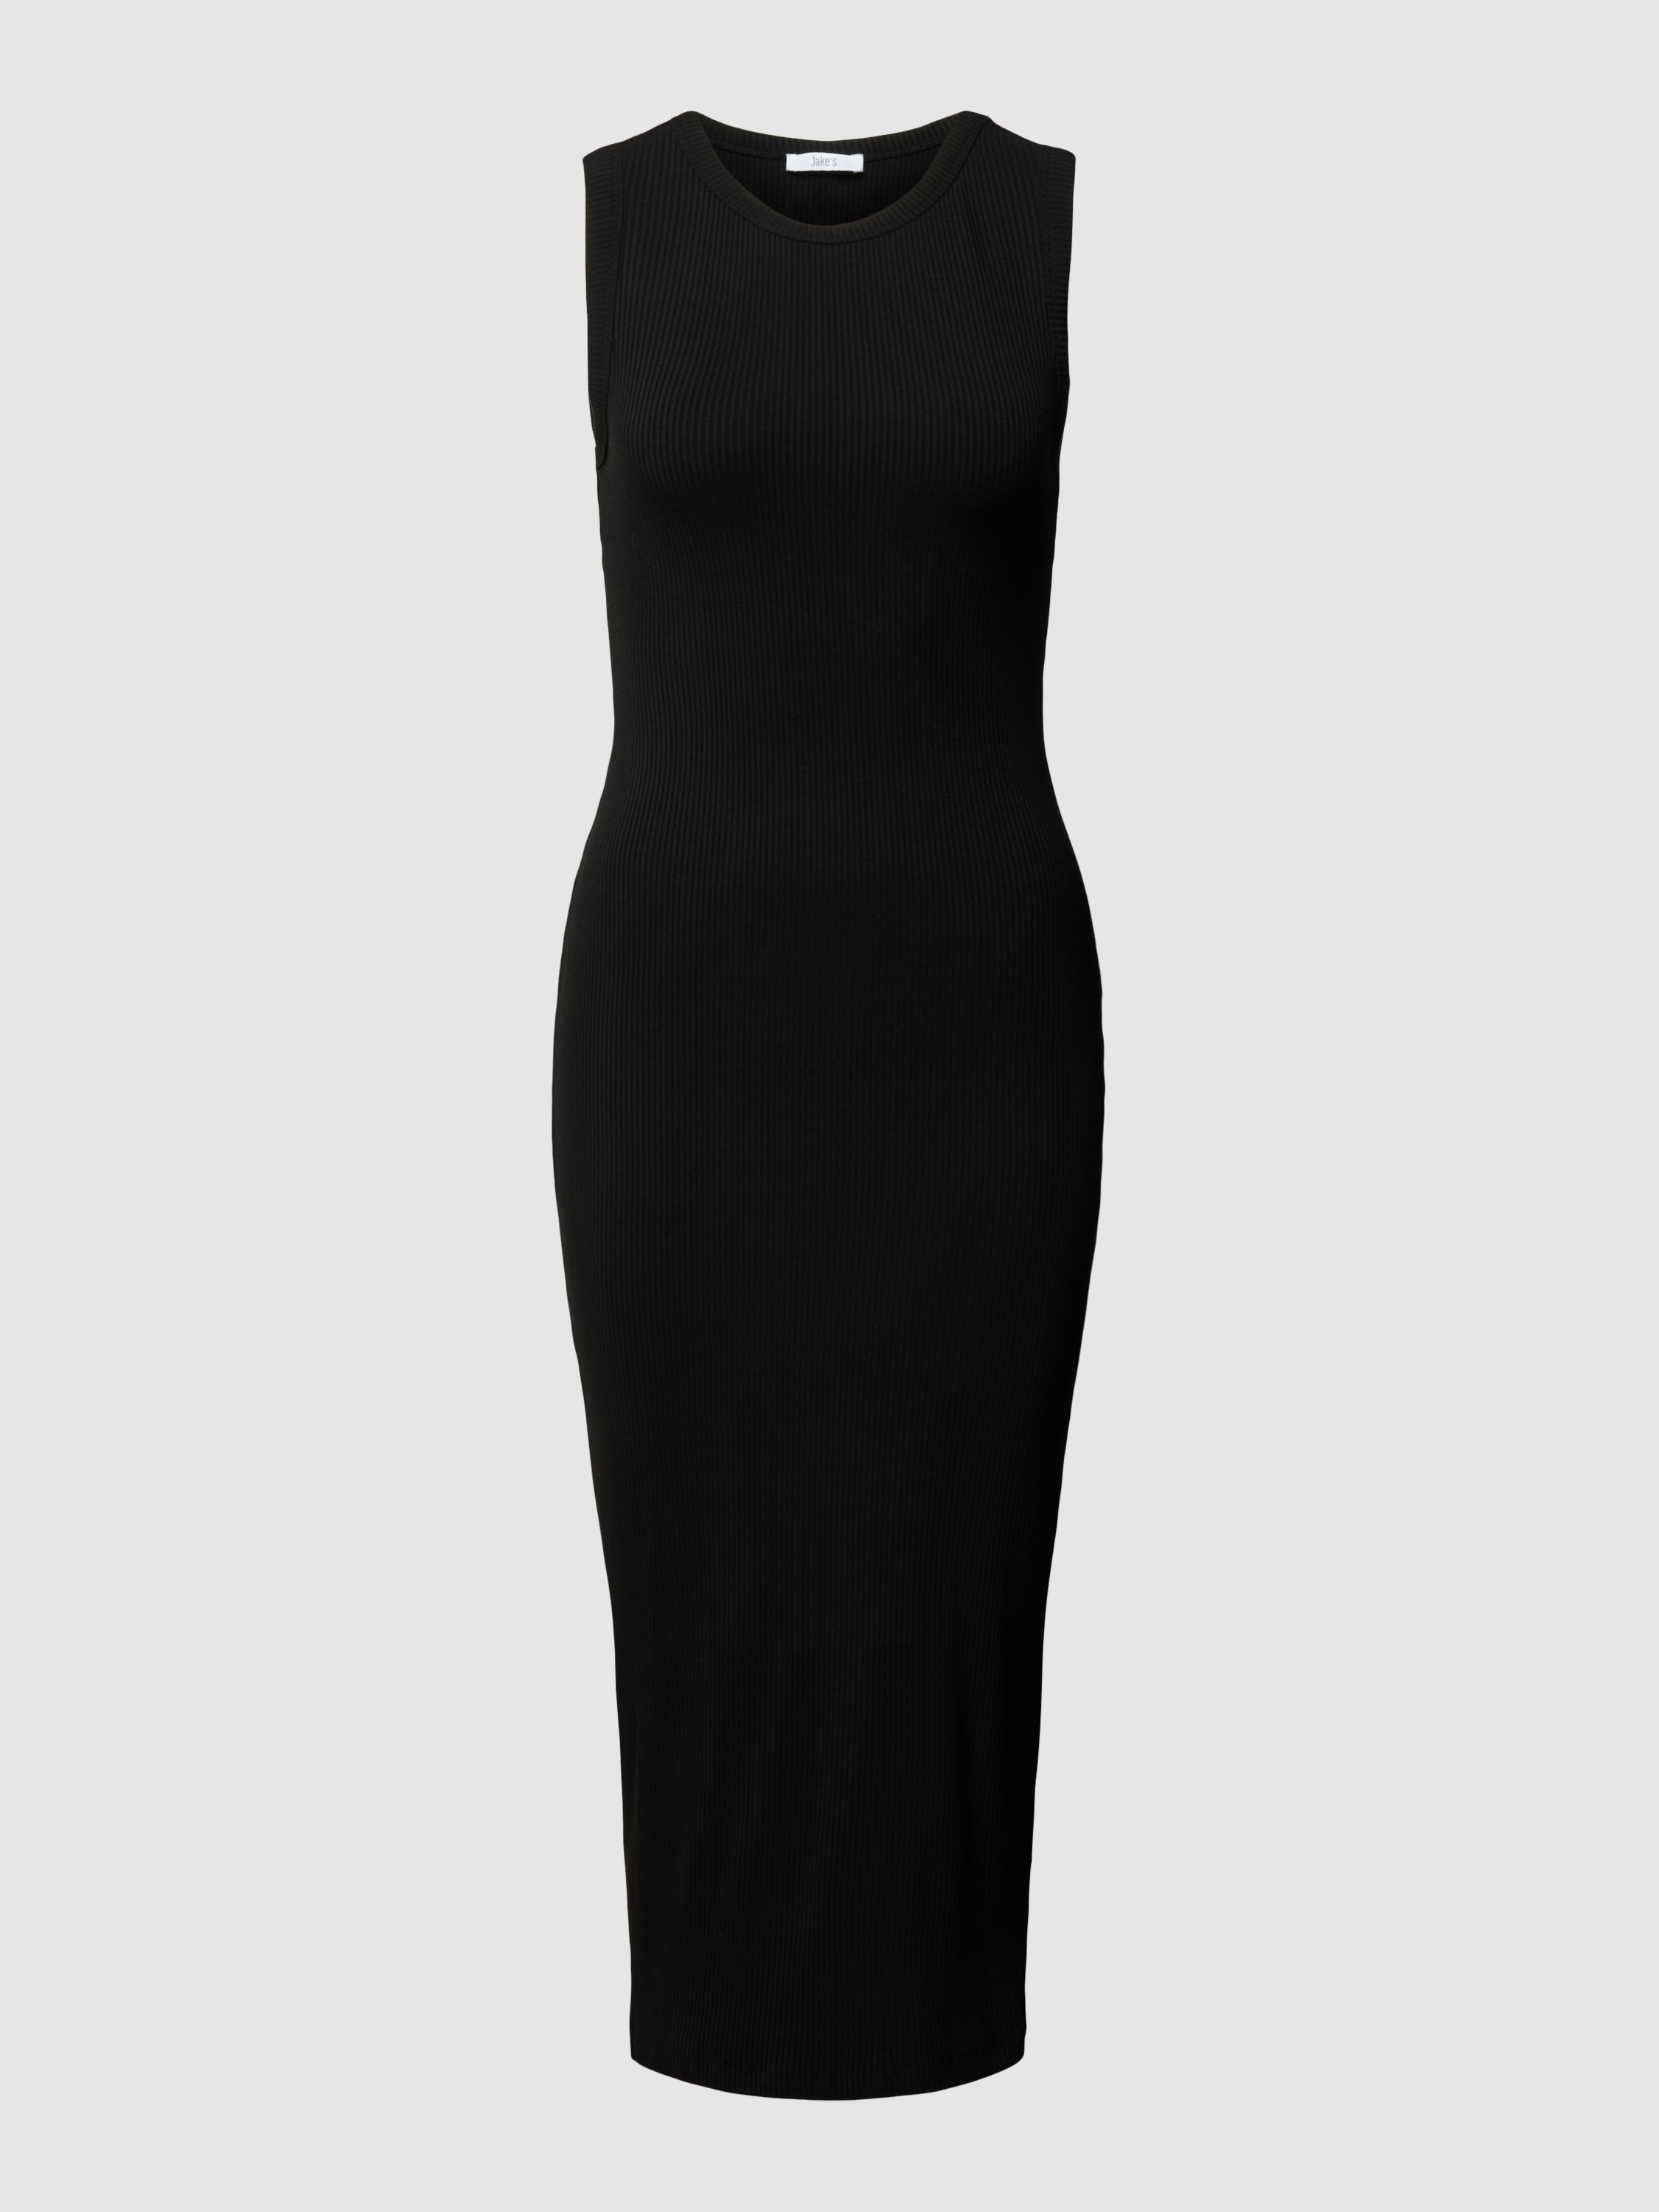 Платье женское Jake*s Casual 1783848 черное XS (доставка из-за рубежа)